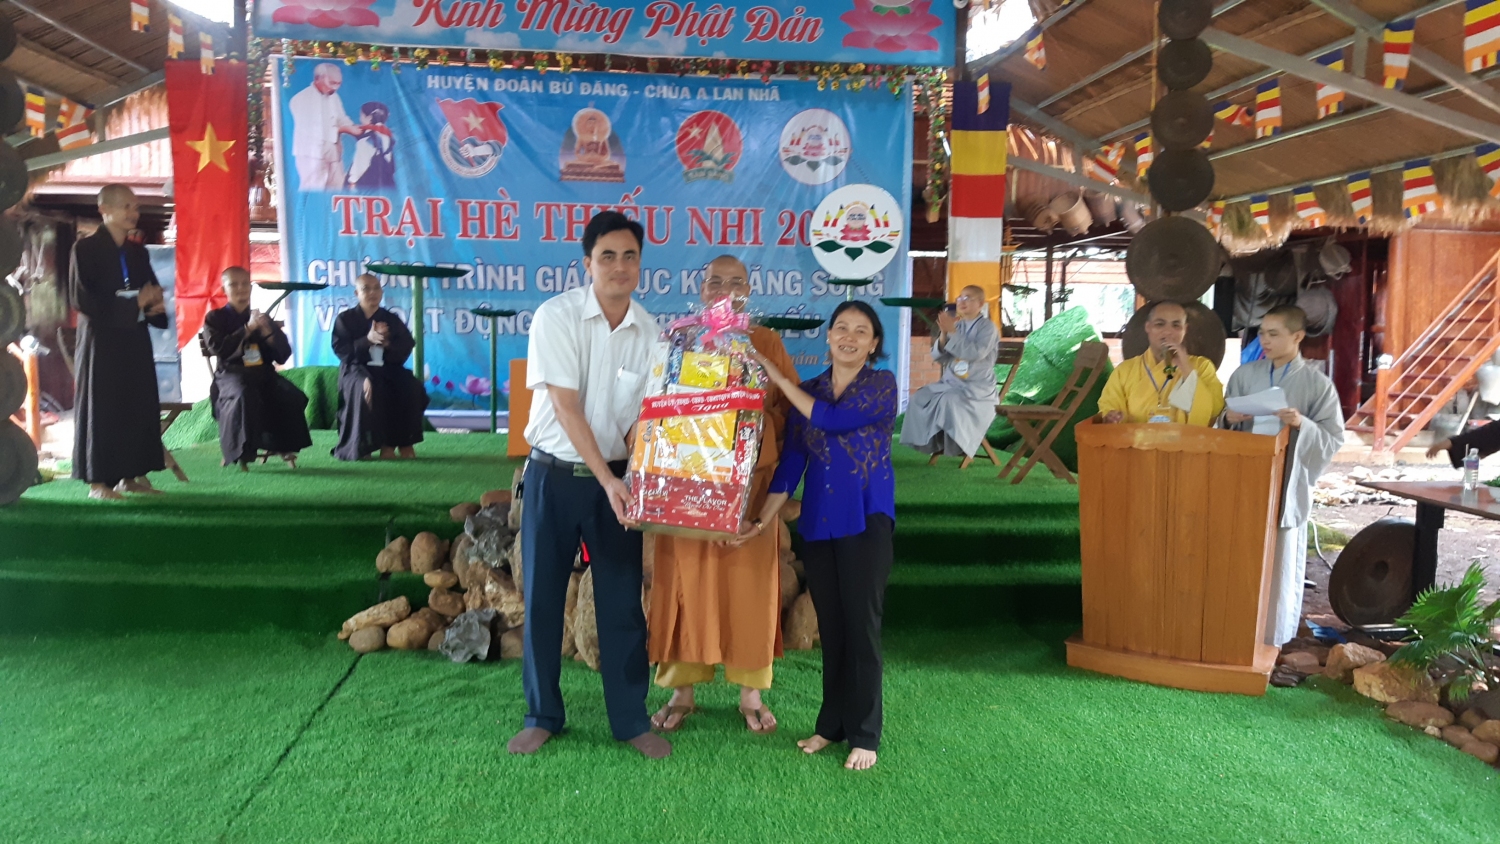 Lãnh đạo huyện Bù Đăng, xã Đức Liễu tặng quà Chùa Đức Bổn A Lan Nhã